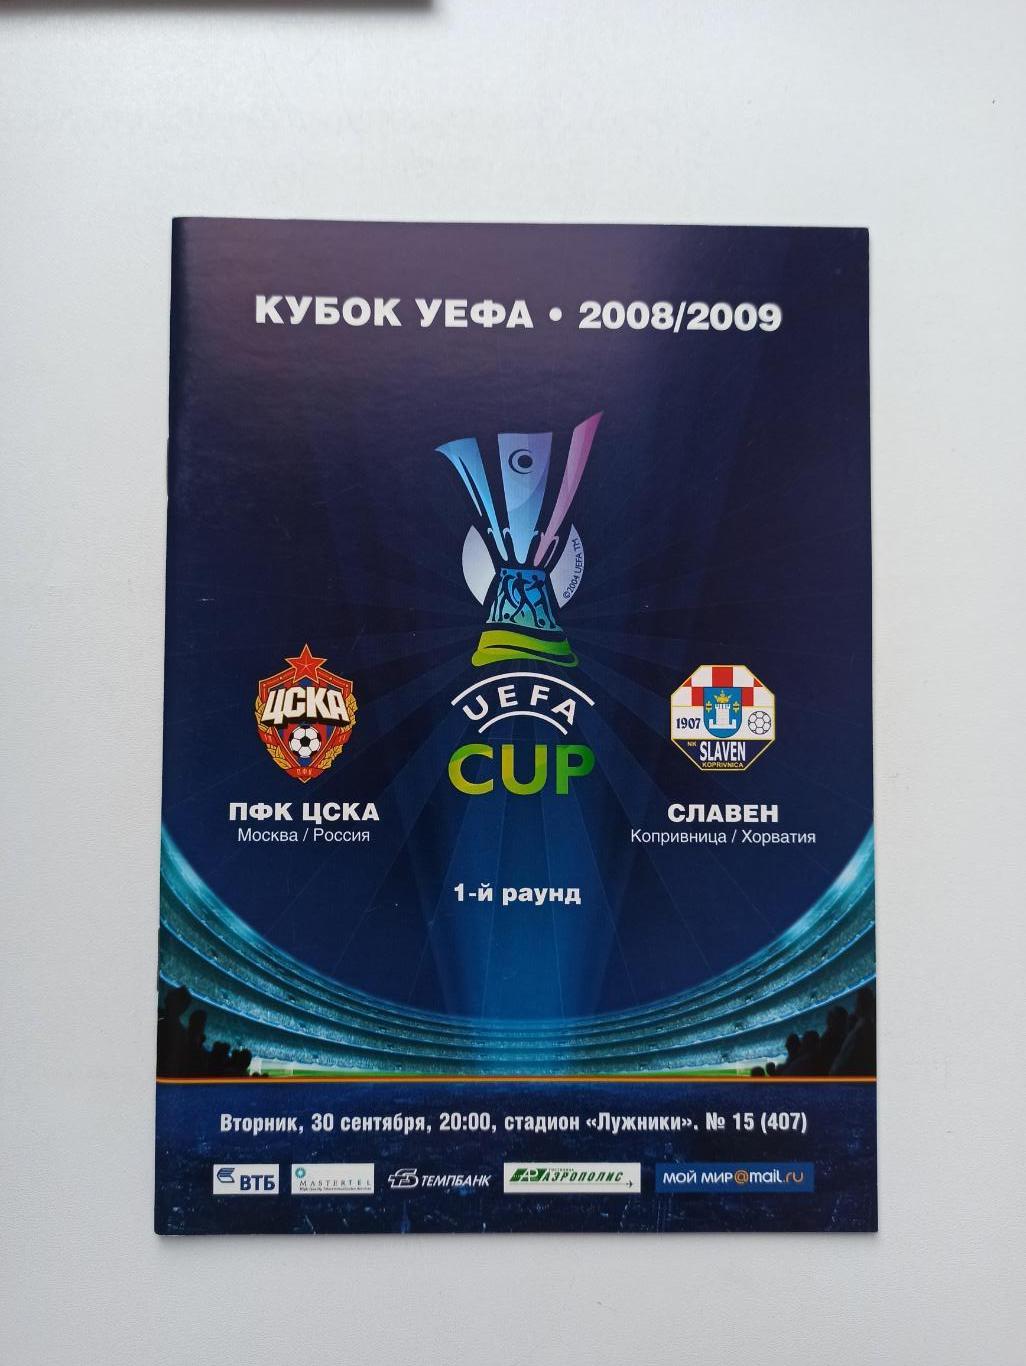 Распродажа, Еврокубки, Кубок УЕФА, ЦСКА (Москва) - Славен (Хорватия), 2008г.